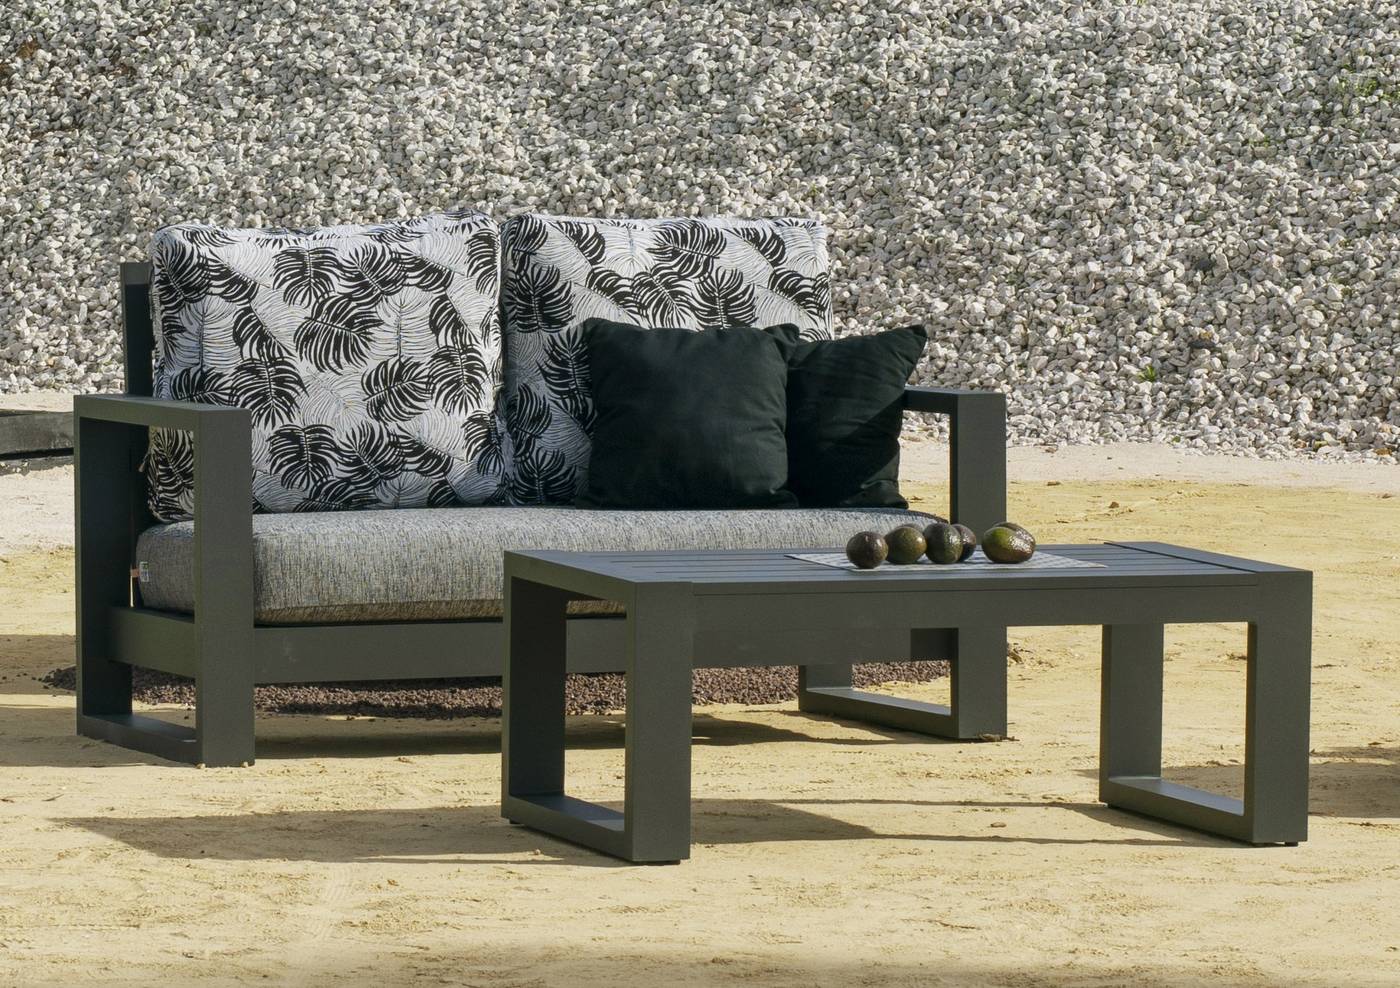 Set Aluminio Luxe Cartago-9 - Conjunto lujoso y robusto de aluminio: 1 sofá de 2 plazas + 2 sillones + 2 reposapiés + 1 mesa de centro + cojines.